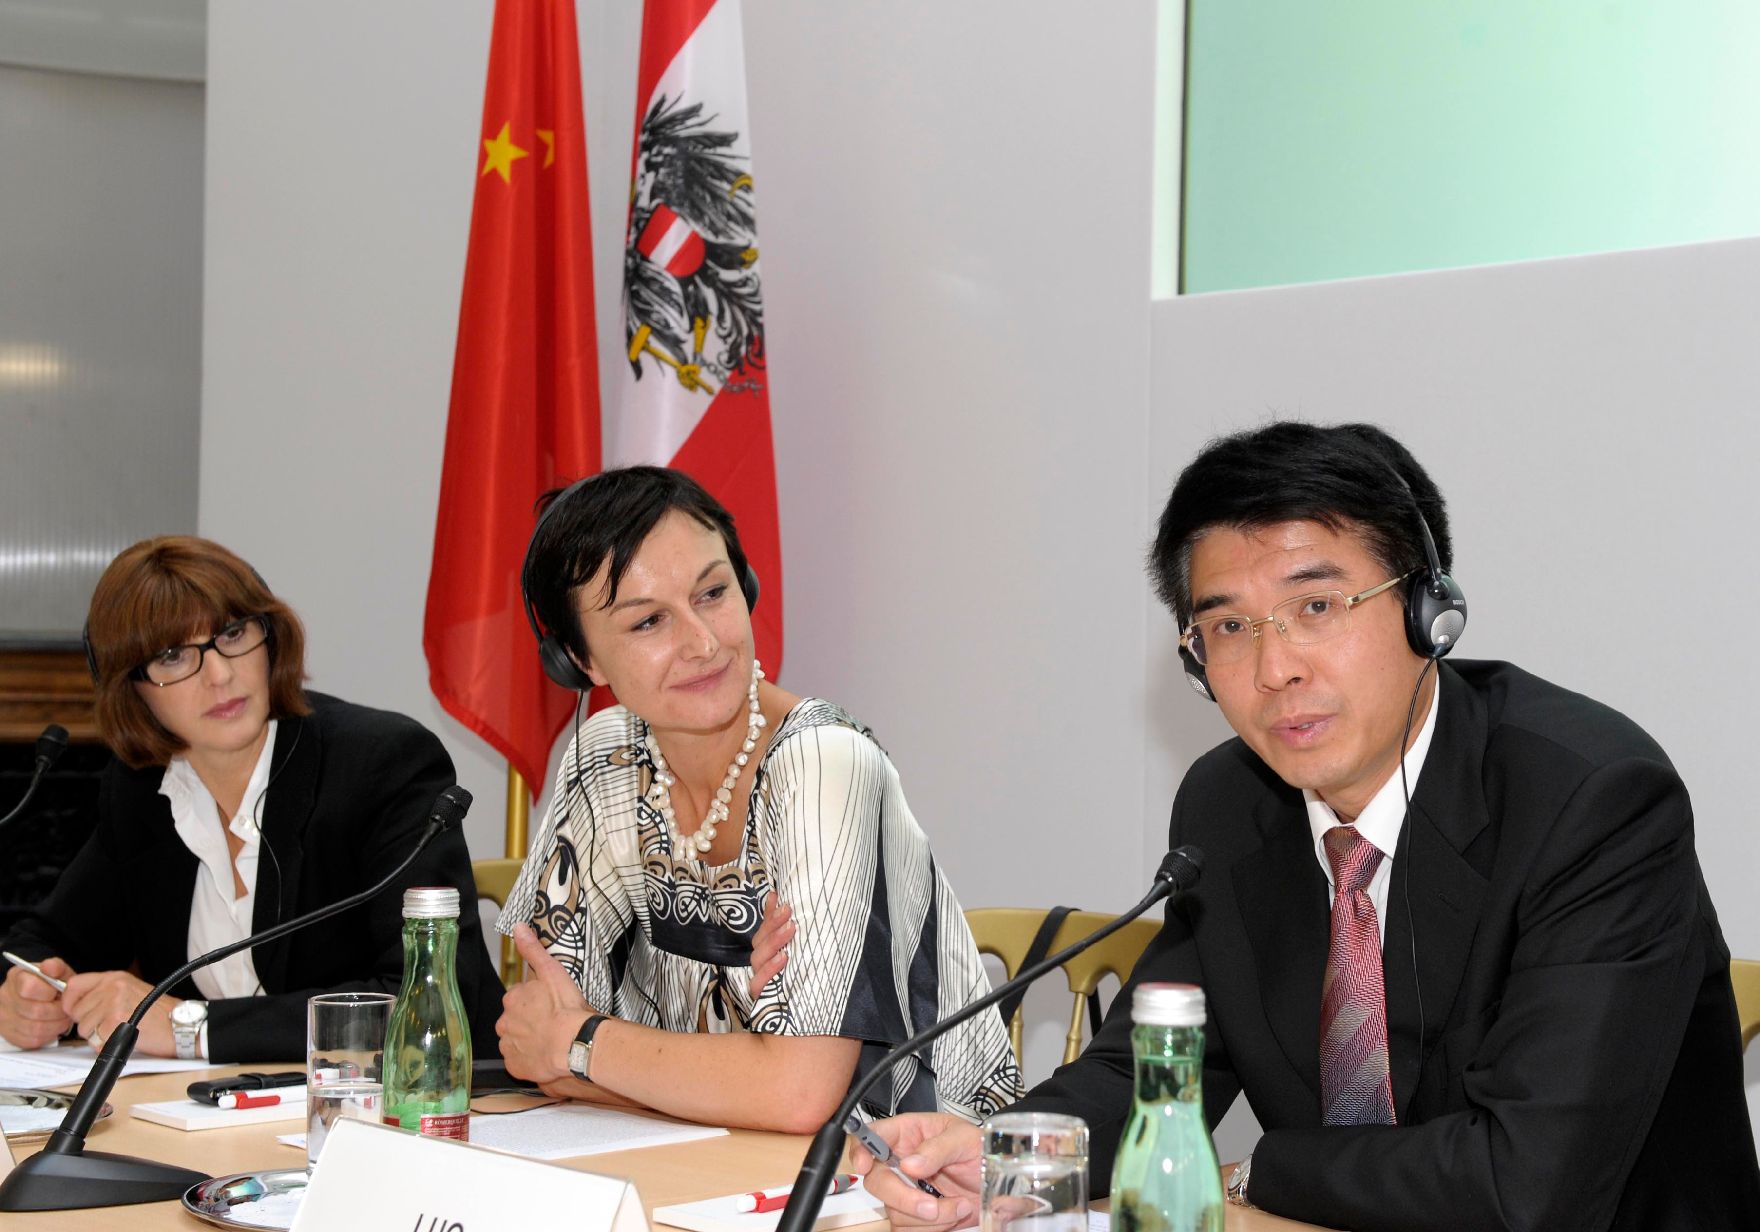 Am 14. September 2011 fand das Mediensymposium Österreich-China in Wien statt. Im Bild (v.l.n.r.) Margaretha Kopeinig (Moderation), Cornelia Vospernik (ORF), Luo Hua (Tageszeitung Renmin).